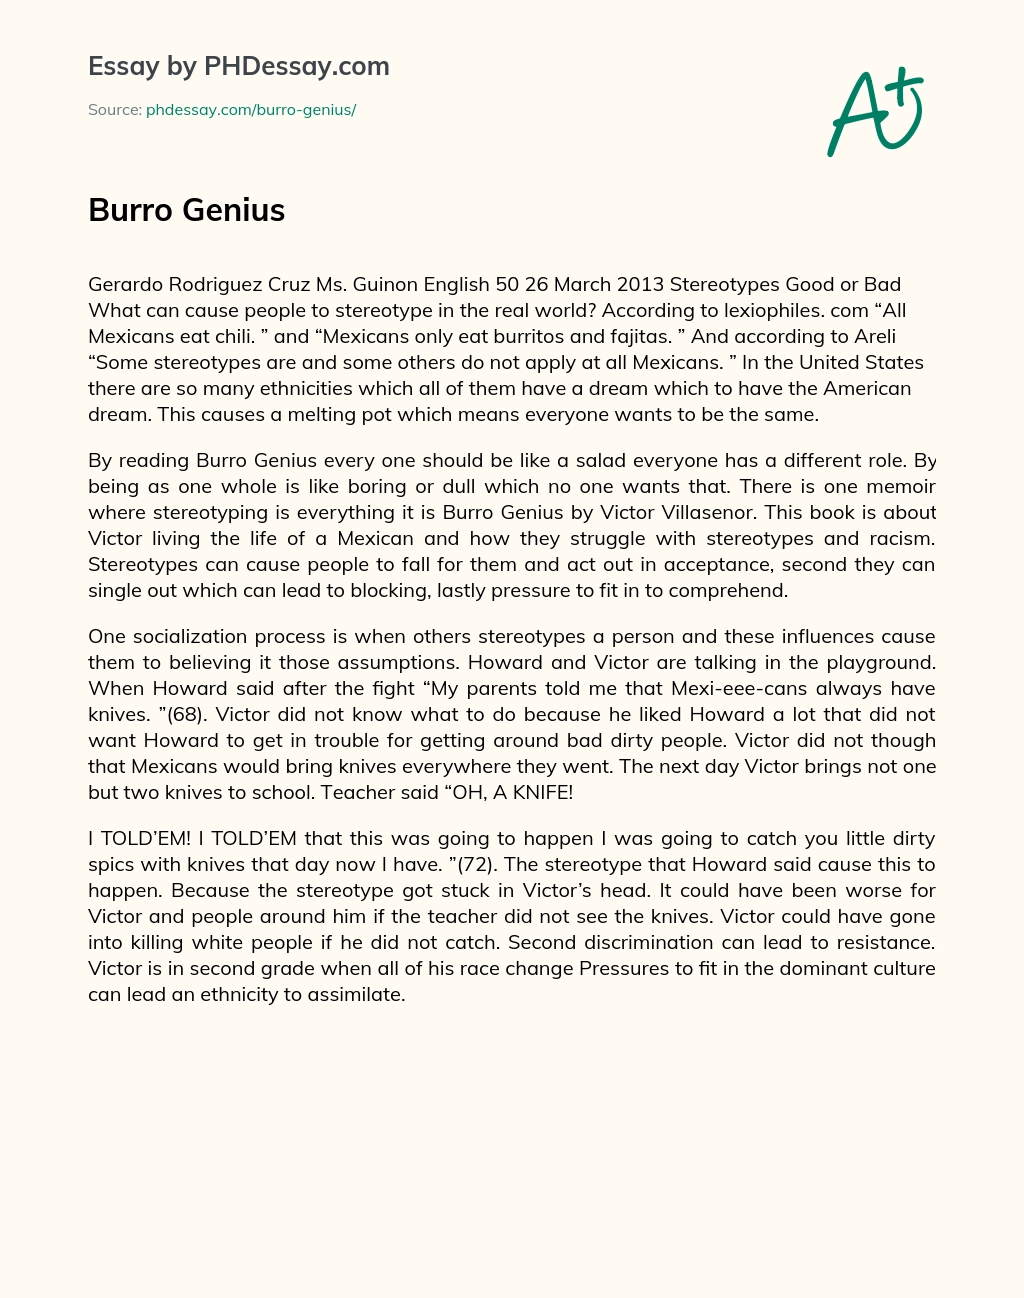 Burro Genius essay